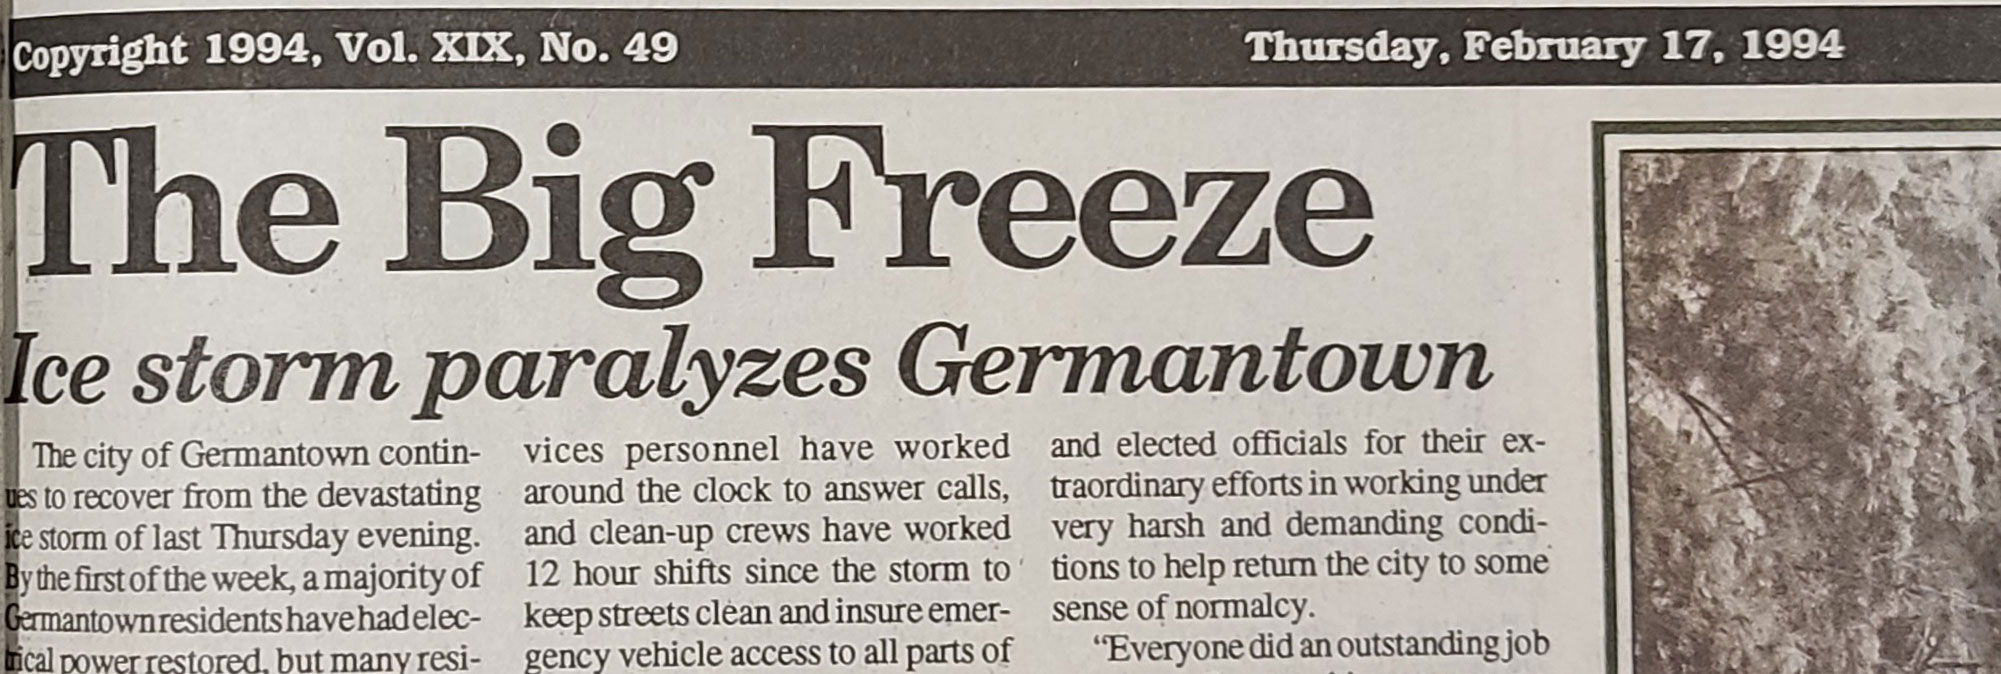 Big Freeze in Germantown